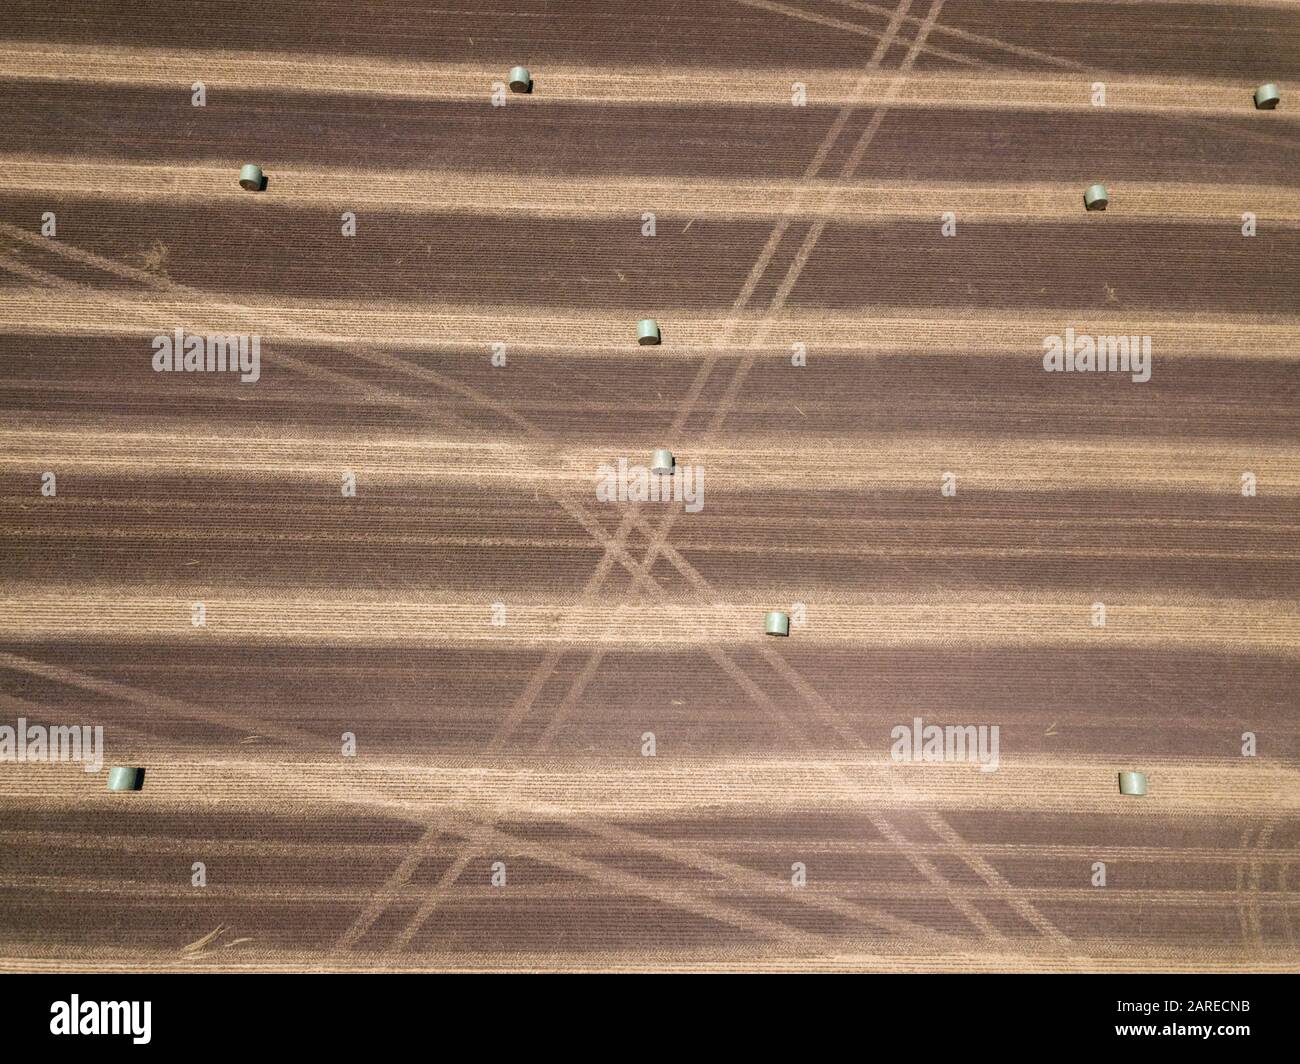 Paddock agricolo con balle di fieno rotonde, piste e motivi astratti di fondo, vista aerea, Victoria, Australia Foto Stock